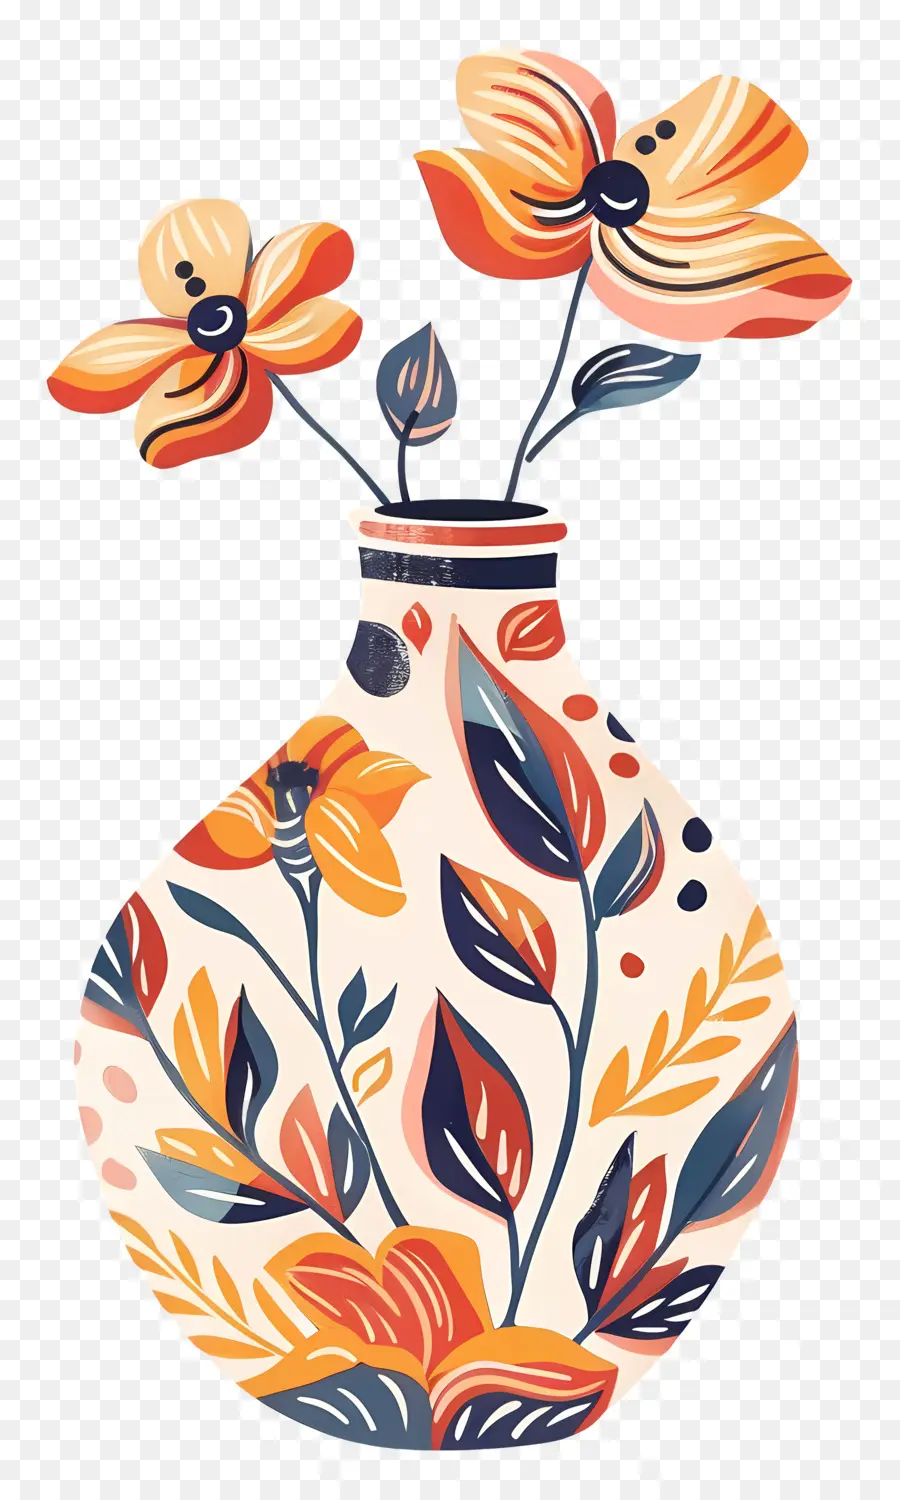 Orange - Künstlerische Vase mit farbenfrohen Blumenarrangement